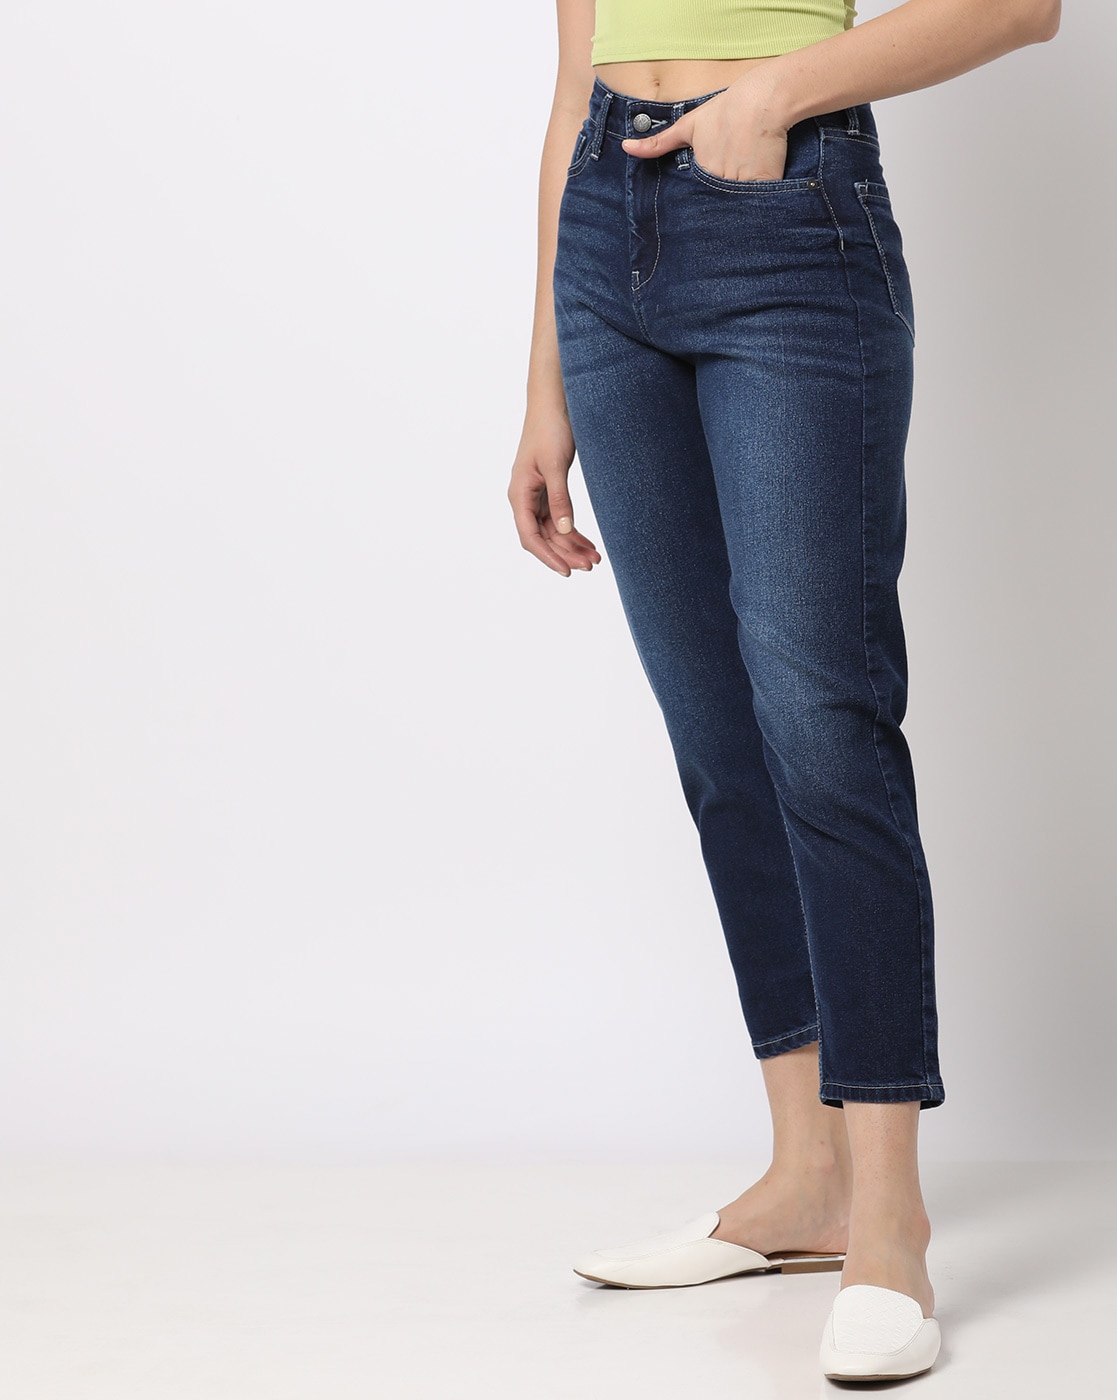 Sømil konservativ Hovedløse Buy Blue Jeans & Jeggings for Women by Pepe Jeans Online | Ajio.com